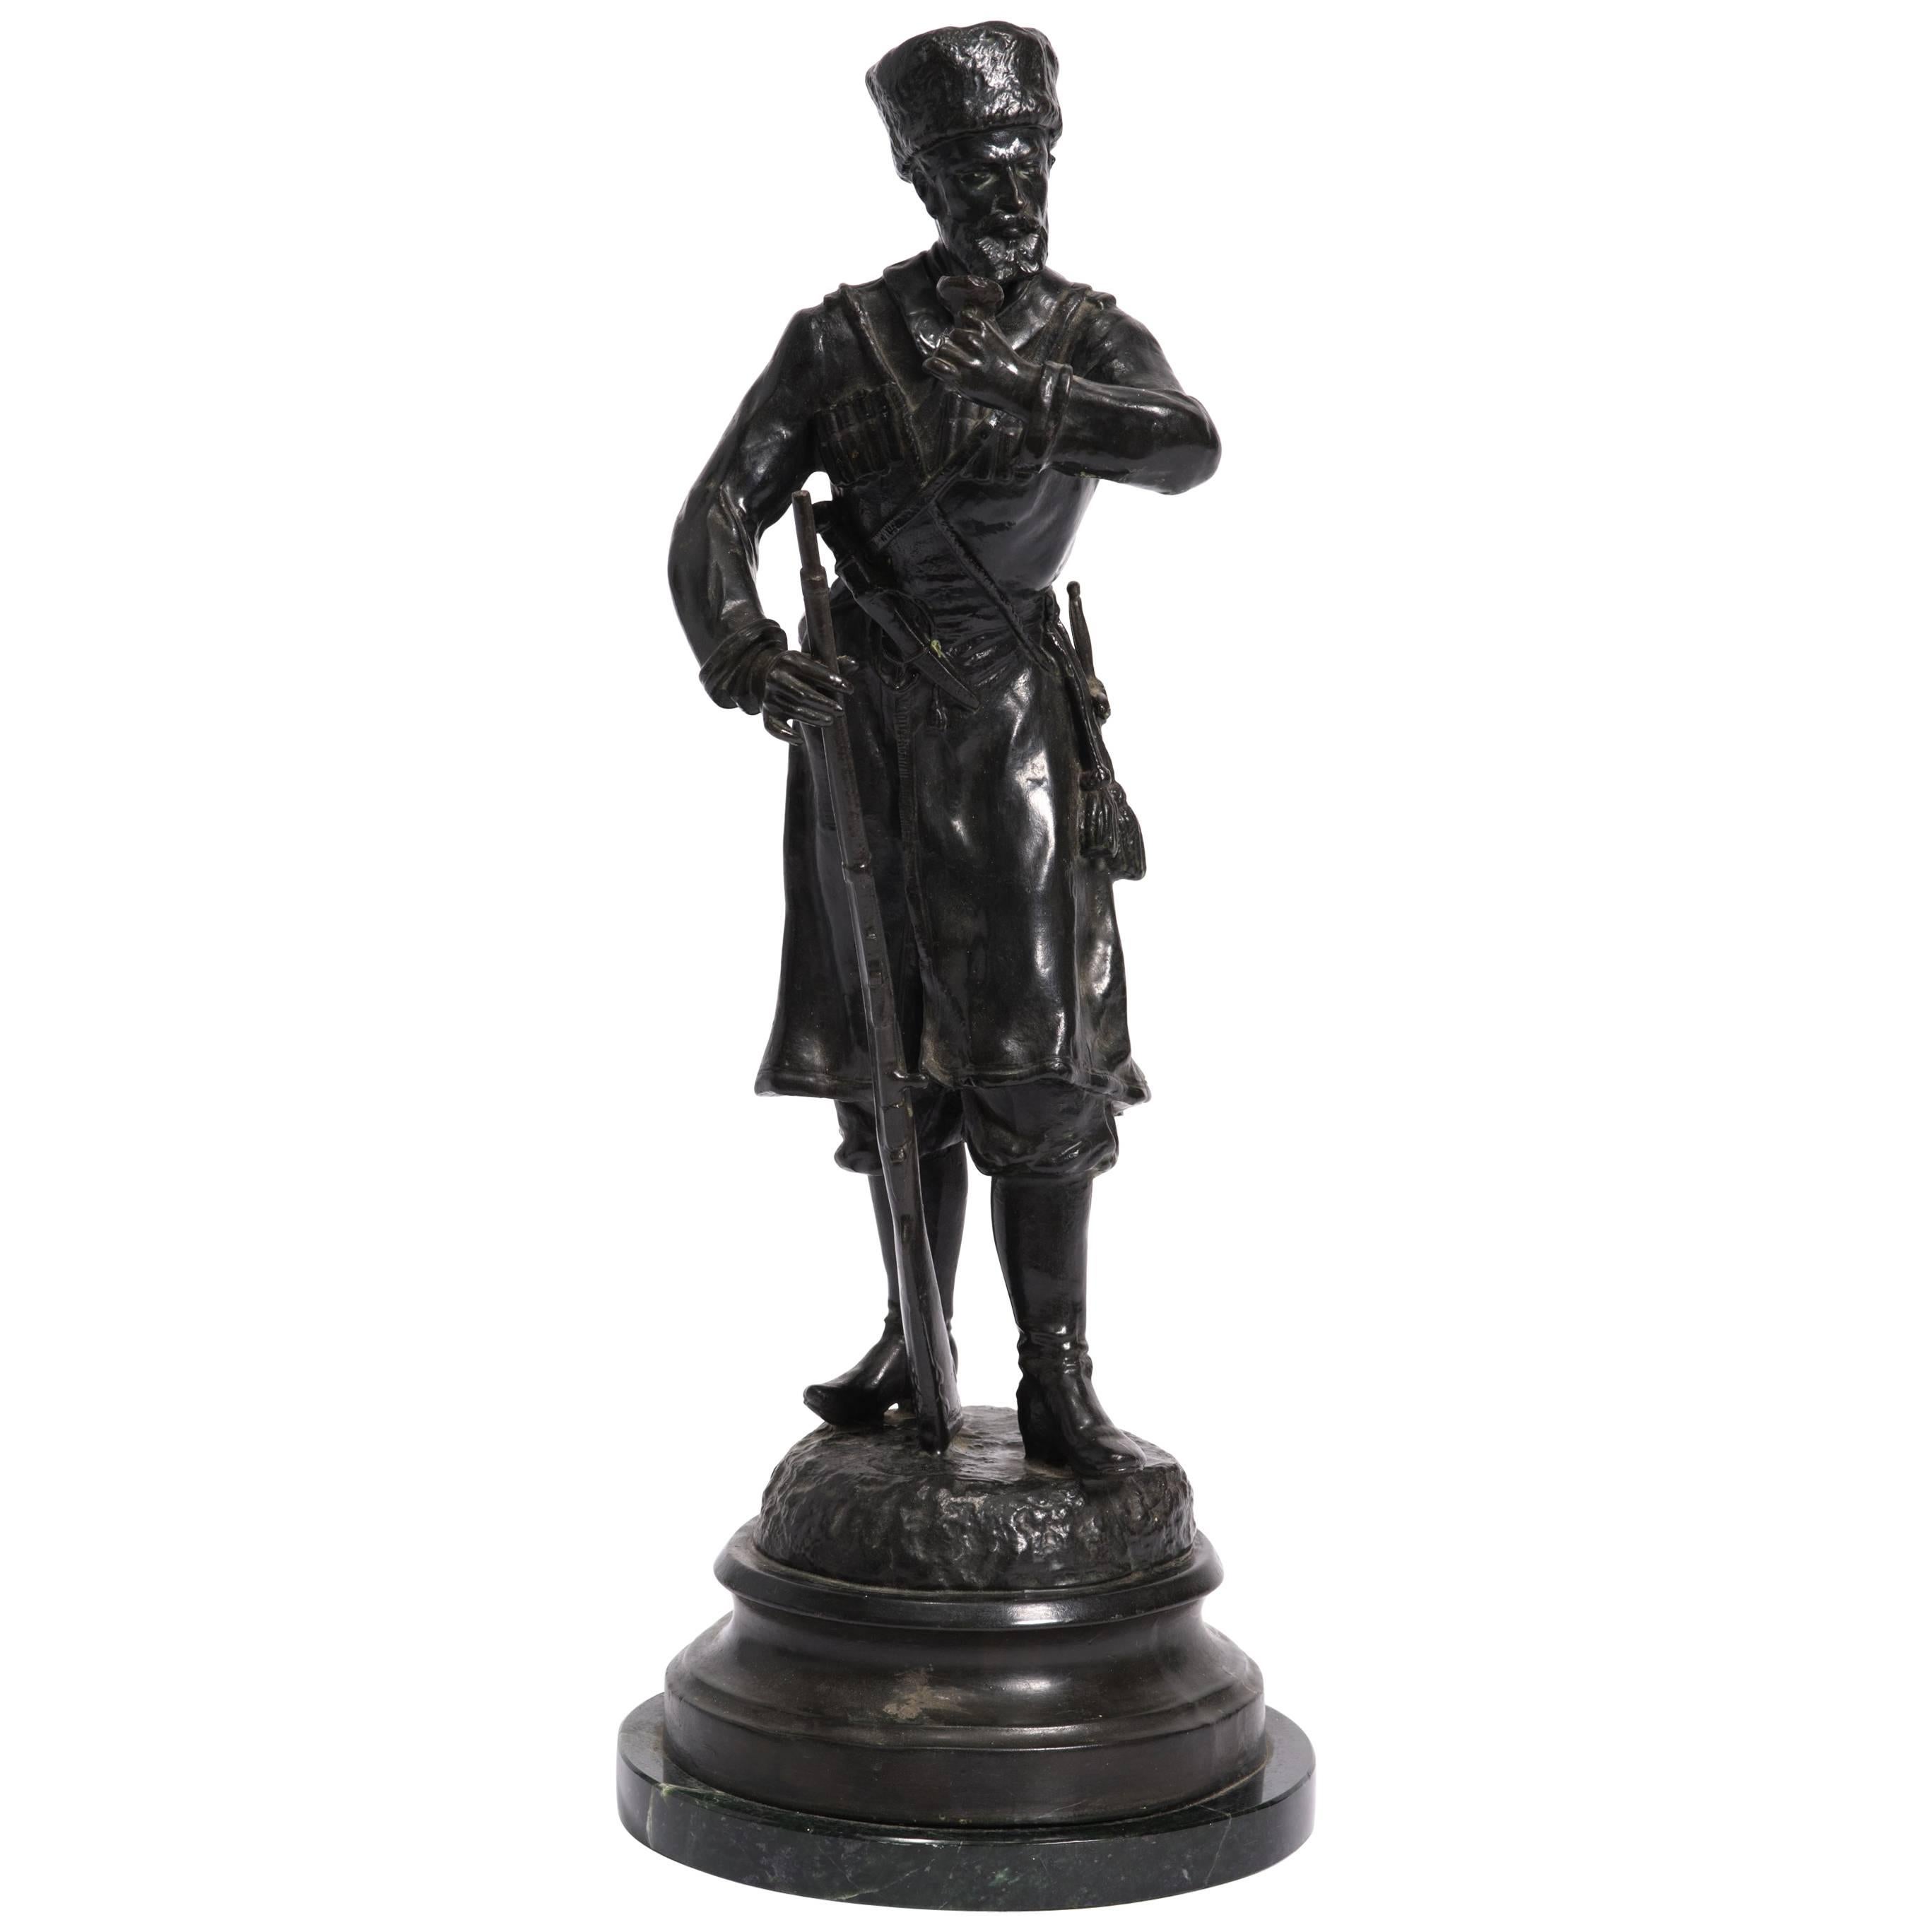 Russische Cossack-Figurenstatue aus Bronze